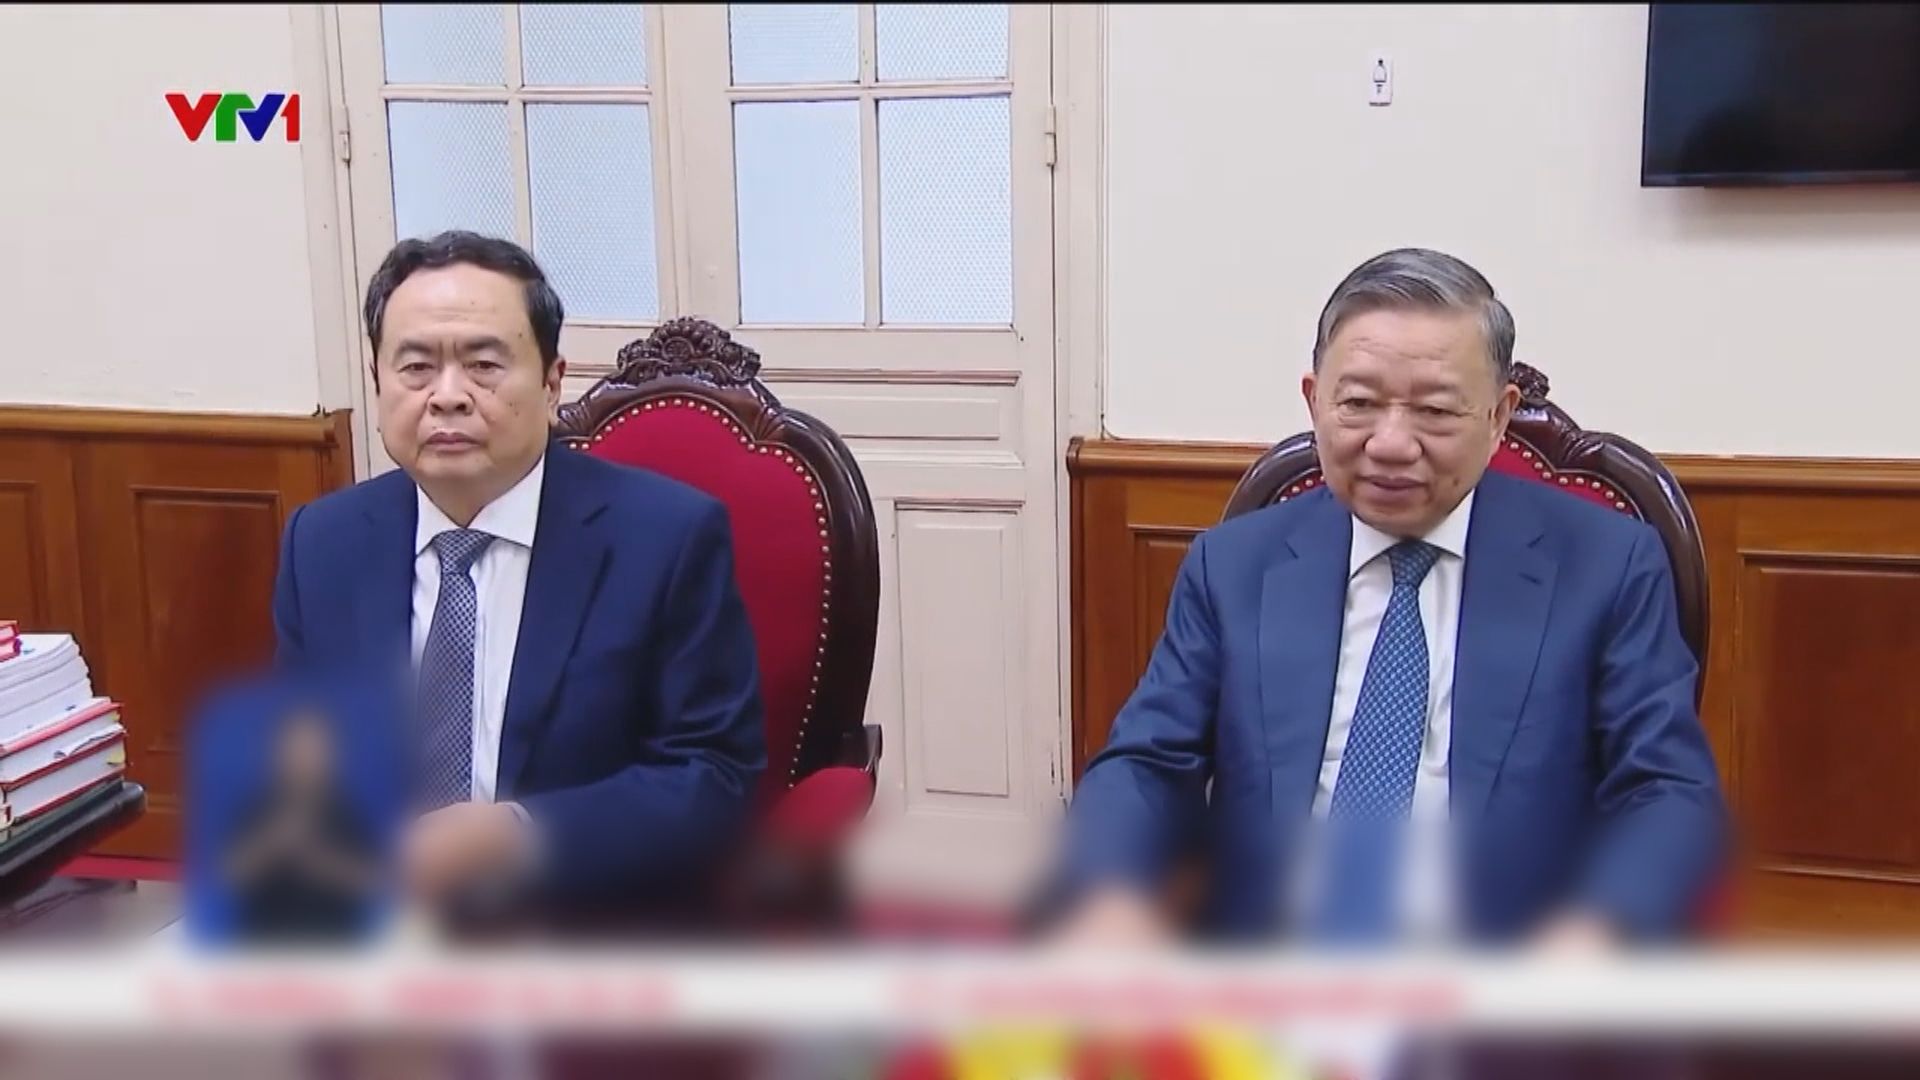 蘇林獲提名出任越南國家主席 陳青敏獲提名出任國會主席